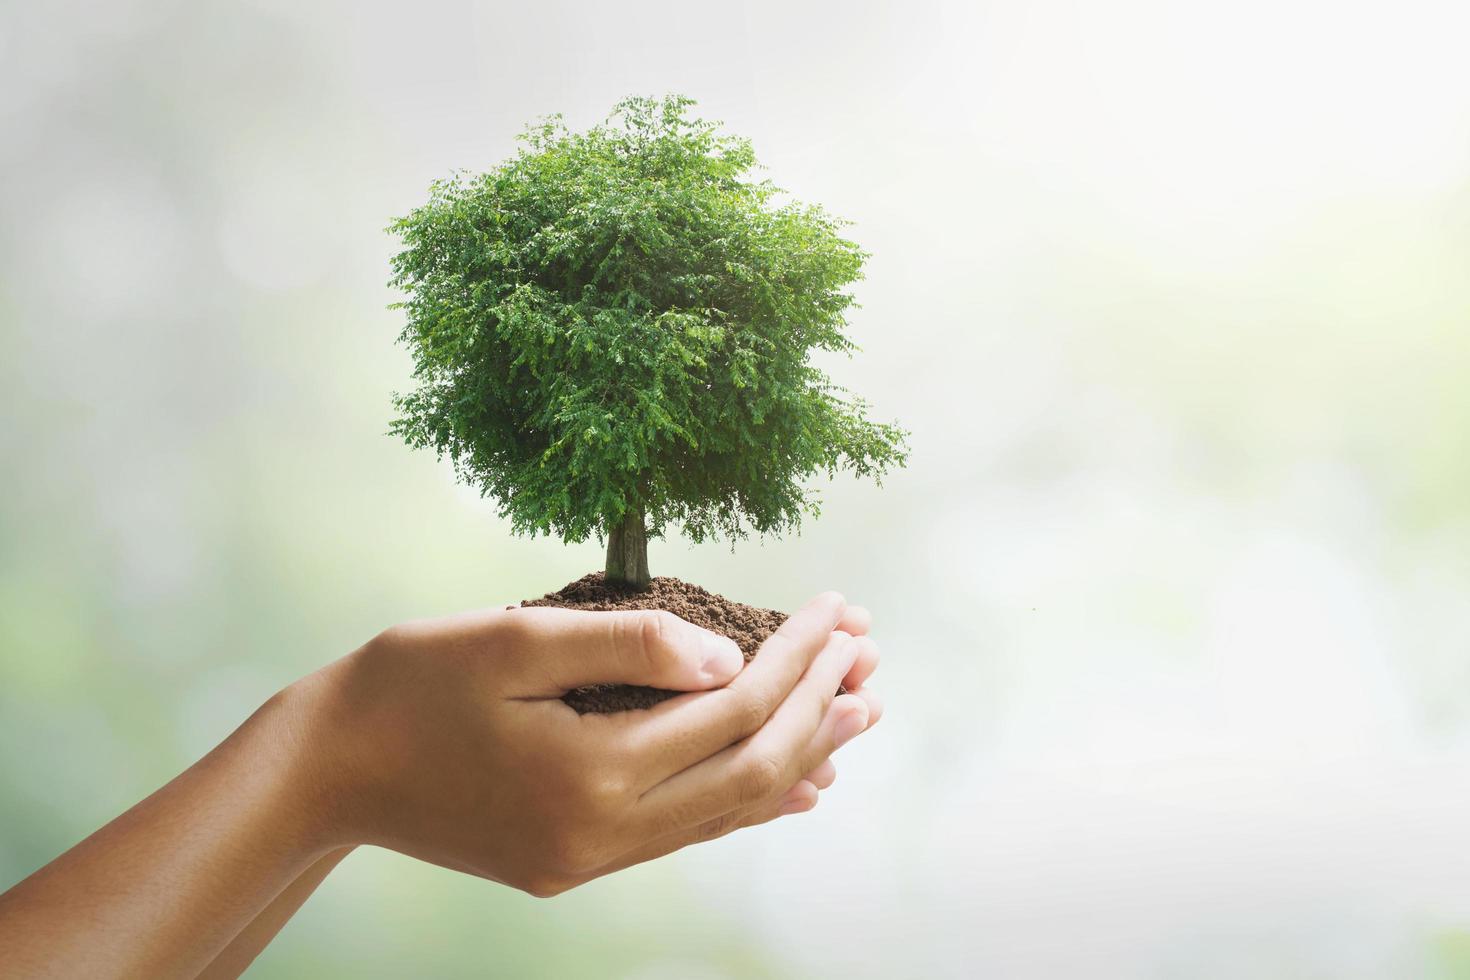 main tenant un grand arbre poussant sur fond vert. concept de jour de la terre écologique photo